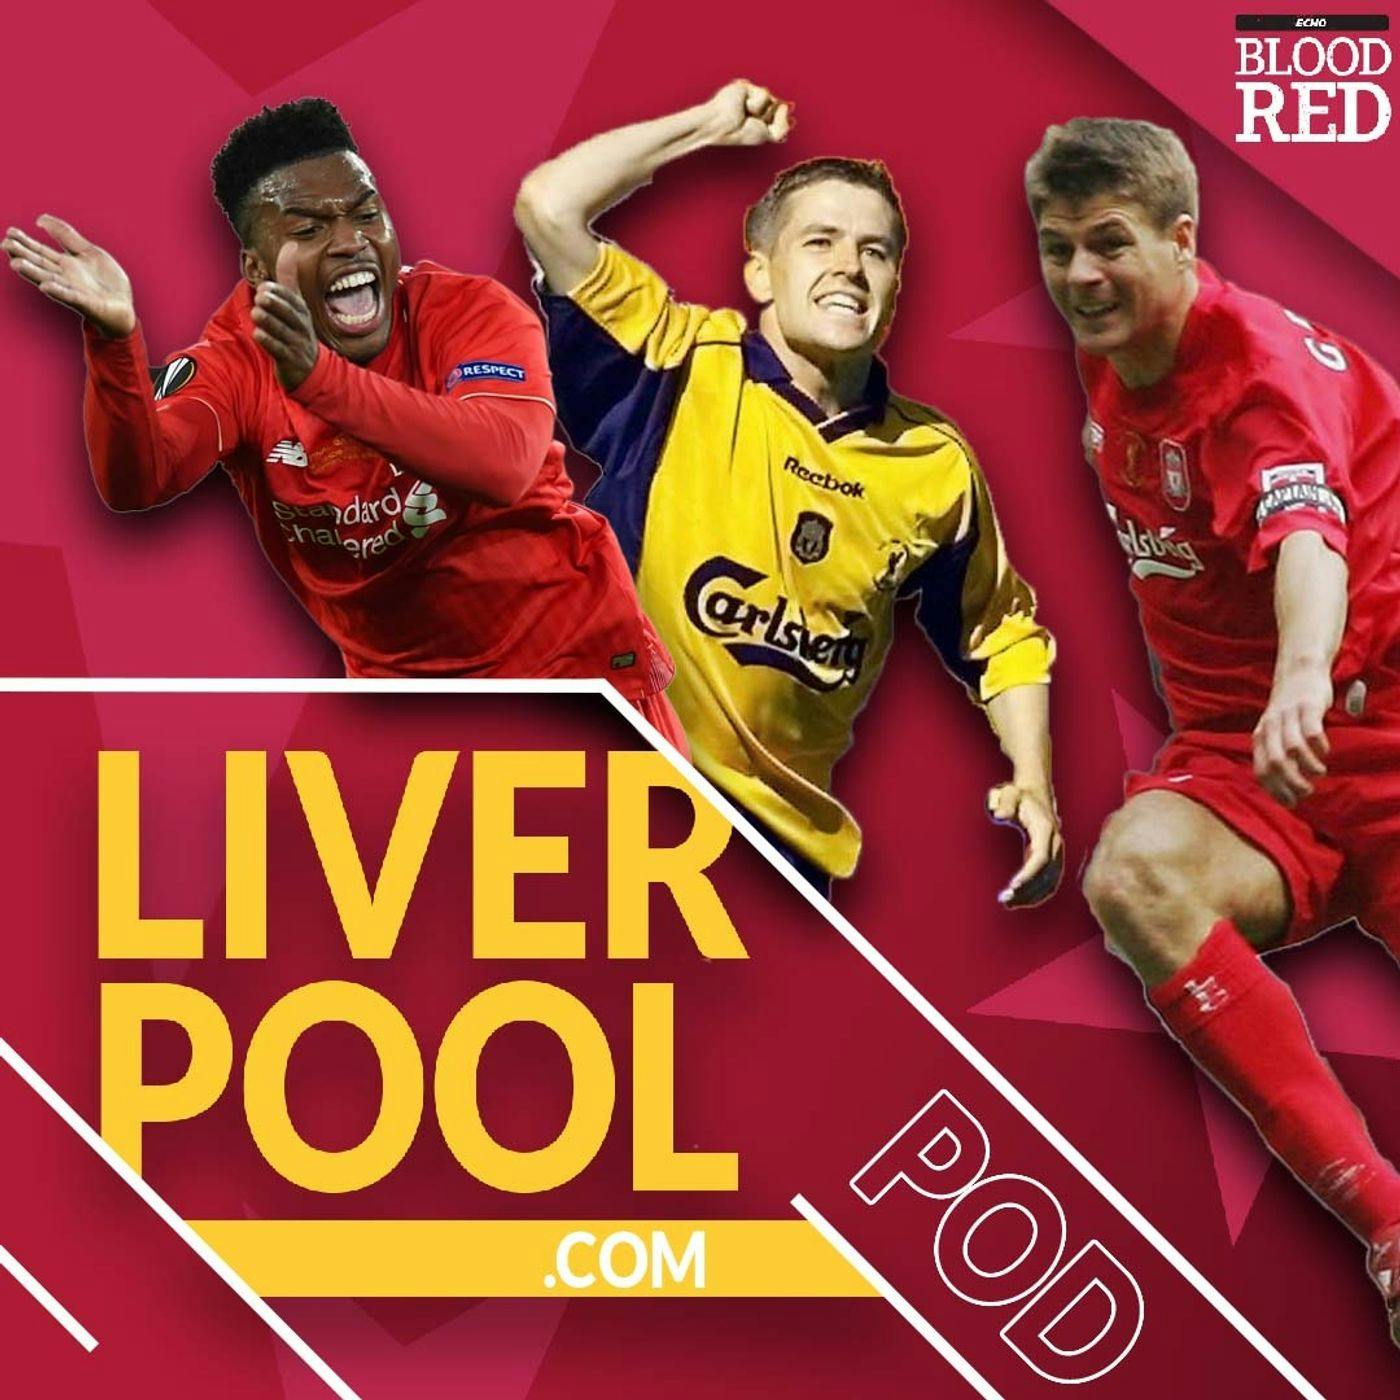 Liverpool.com Podcast: The TOP 5 Liverpool FC Cup Final Goals!